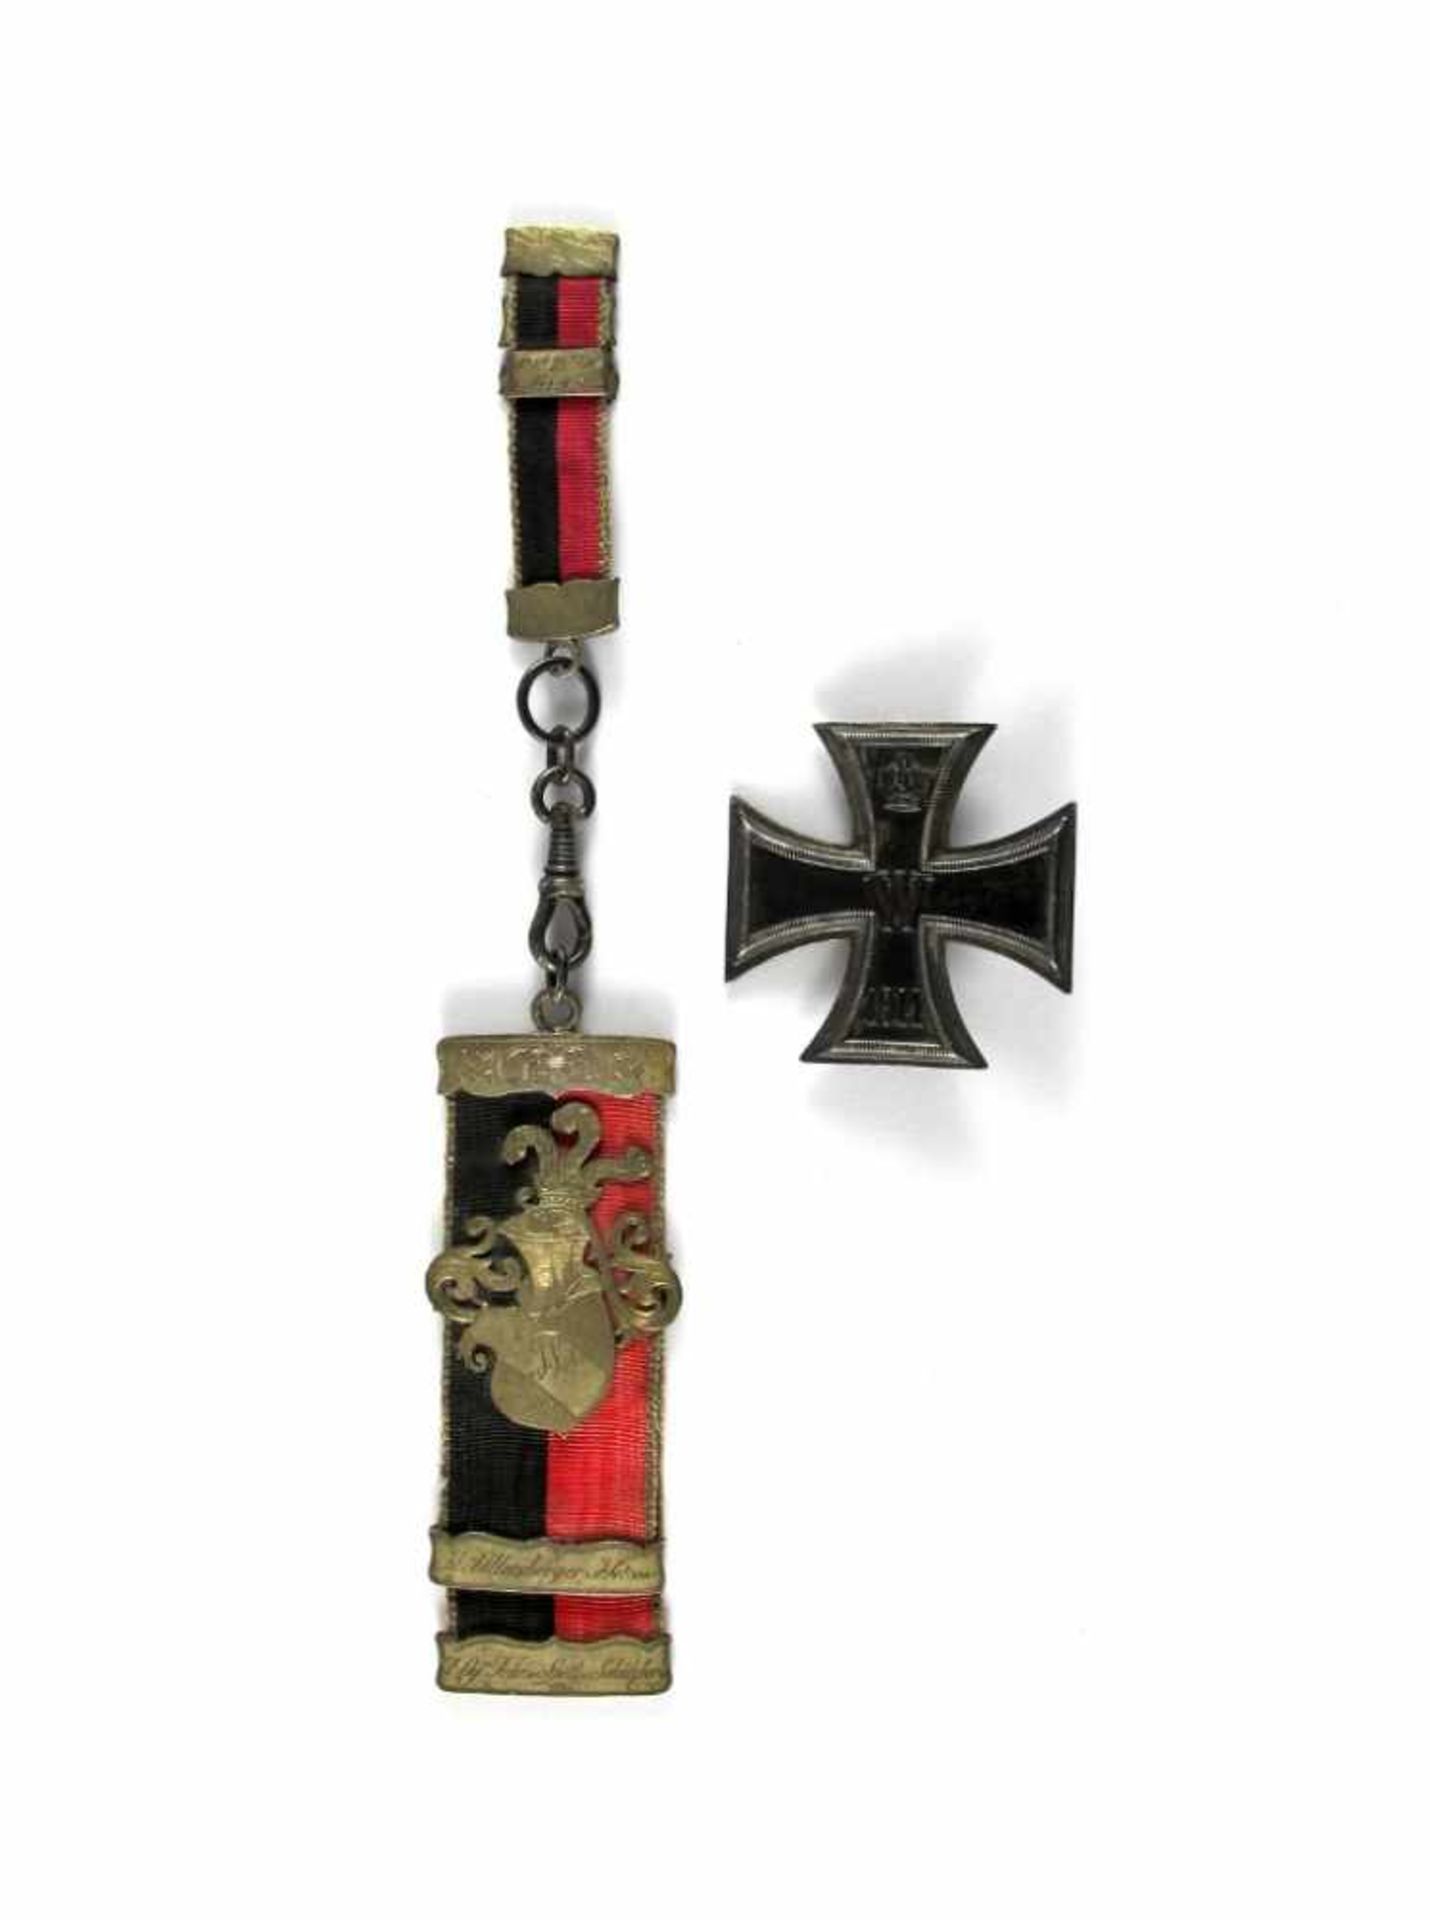 Konvolut mit Eisernem Kreuz mit W, Krone und 1914. Anstecknadel. Bierzipfel schwarz/rot mit